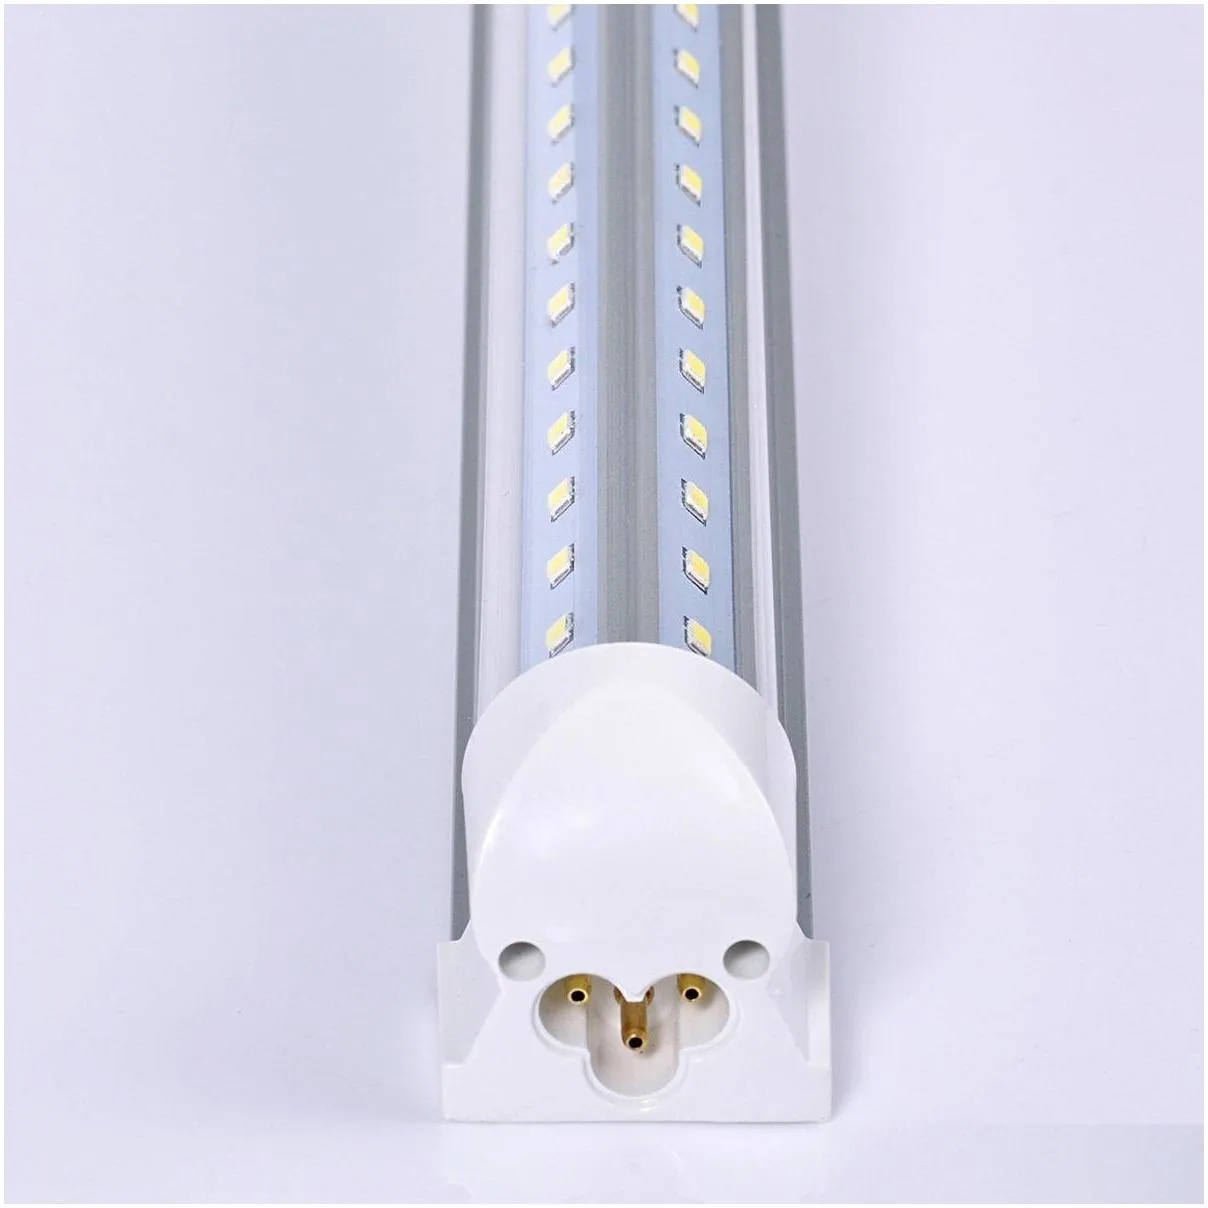 linkable led light bulb 4 5 6 8 ft t8 led tube integrate v shape 4ft 8ft fluorescent tube led shop light fixture warehouse garage lamp